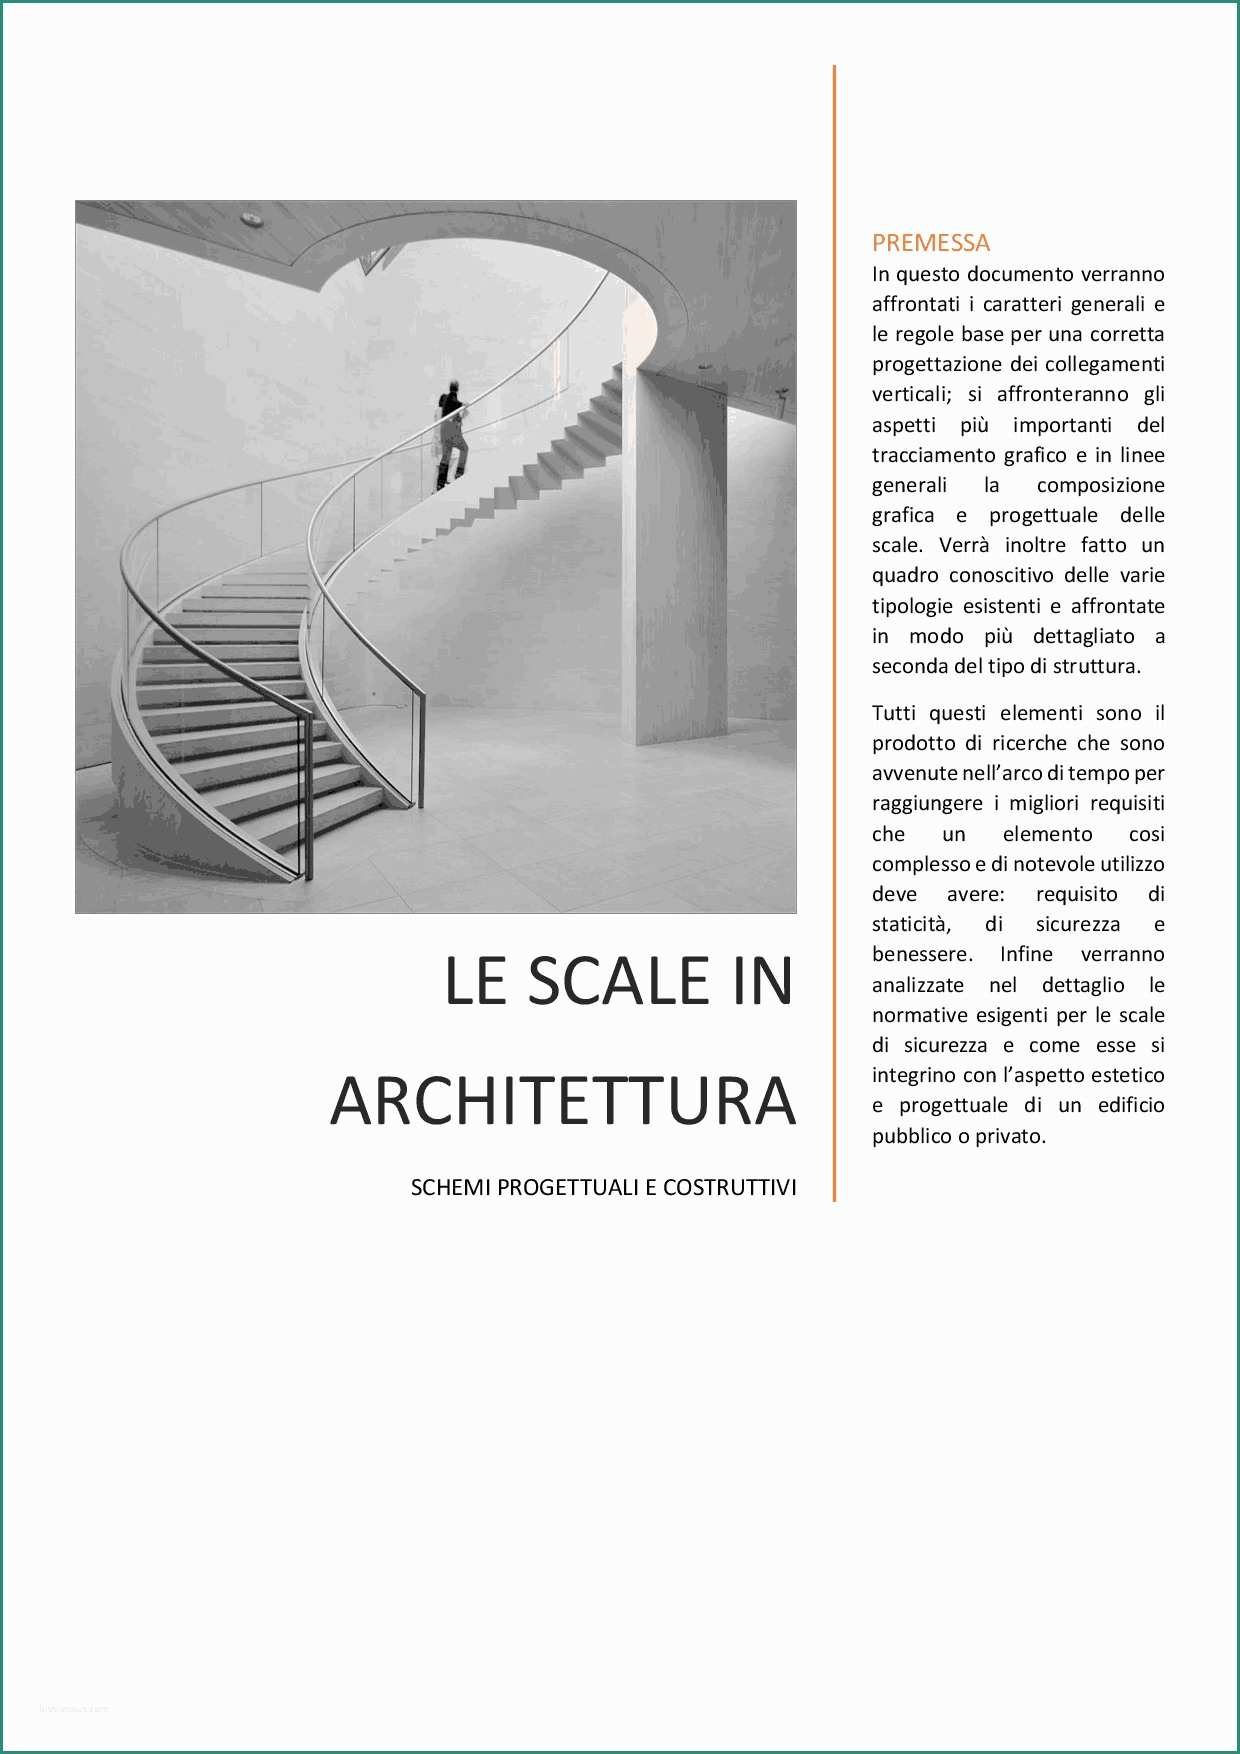 Case Prefabbricate Pro E Contro E Le Scale In Architettura Docsity